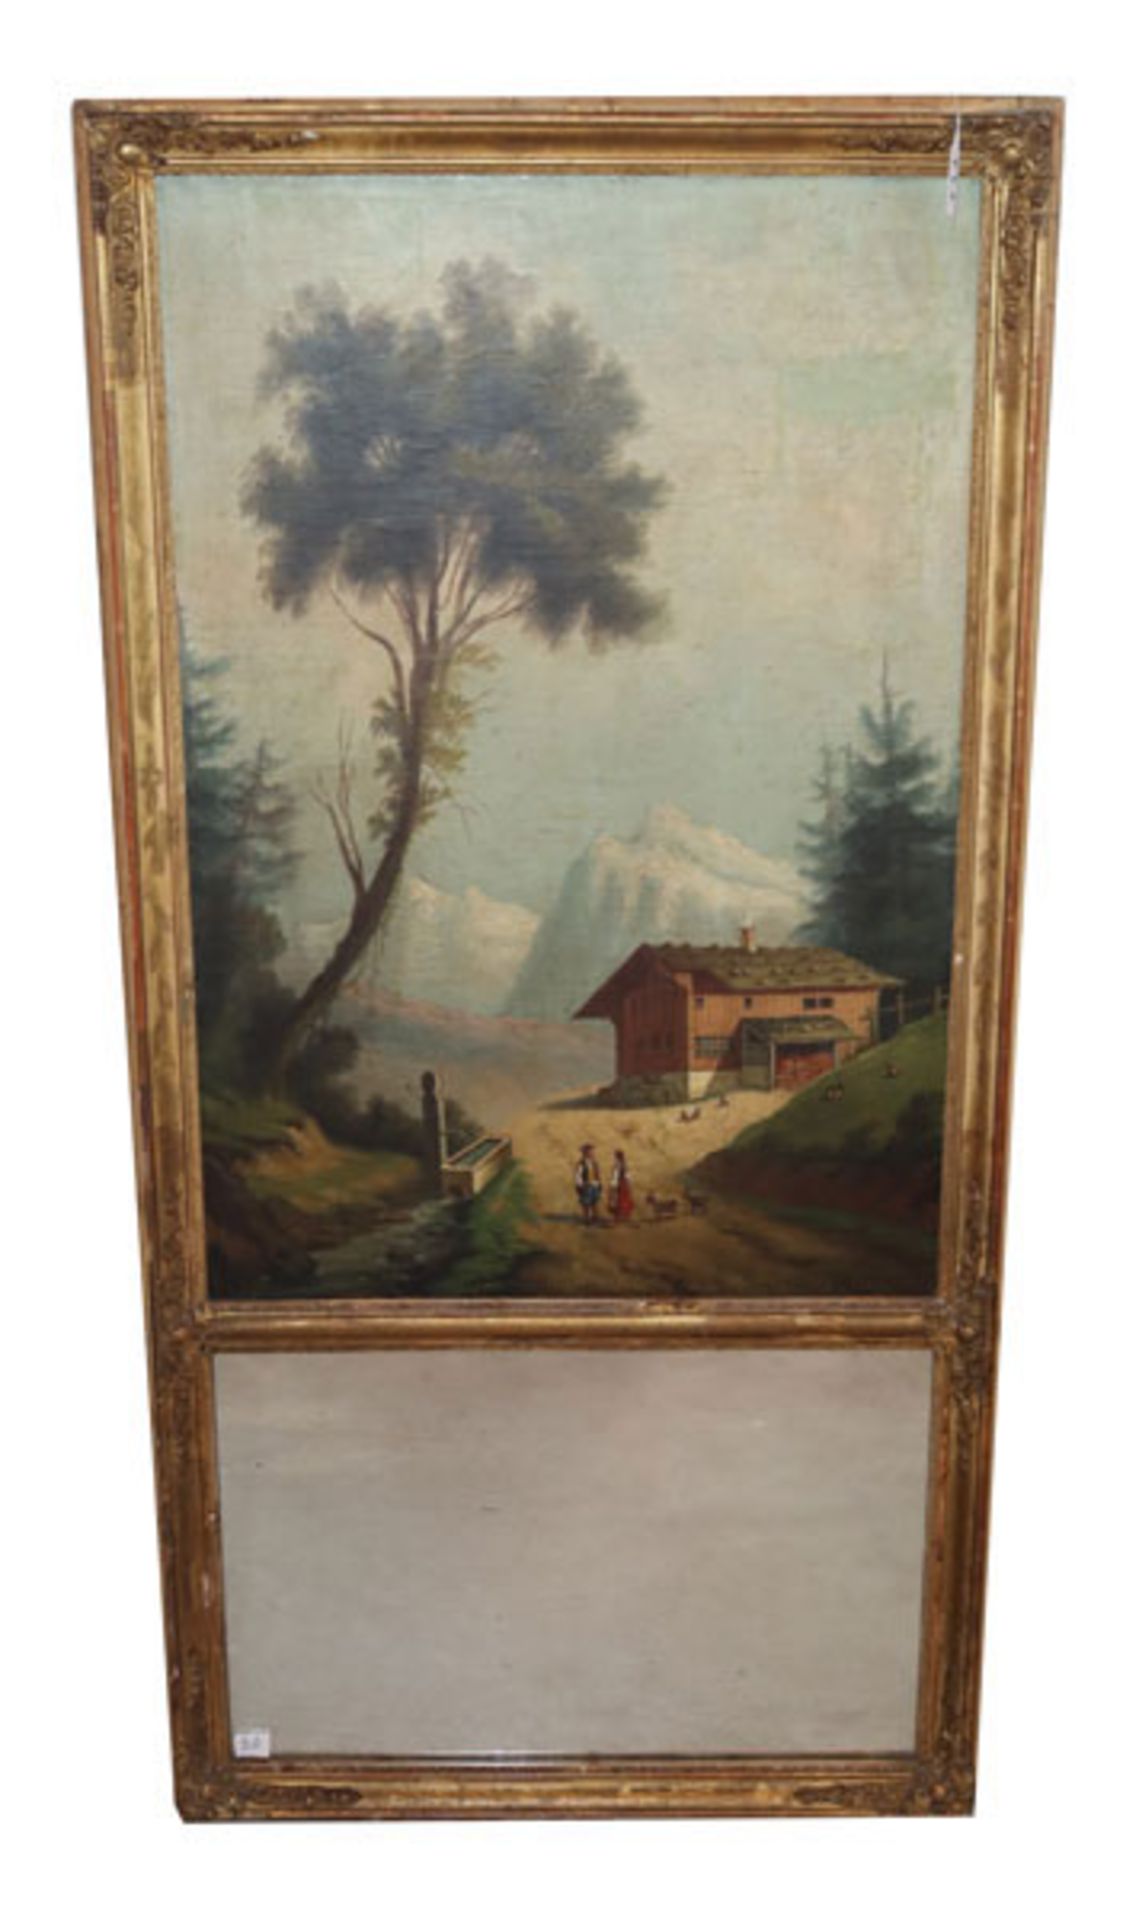 Gemälde ÖL/LW 'Gebirgslandschaft mit Bauernhauf', mit Spiegel, gerahmt, Rahmen beschädigt, incl.